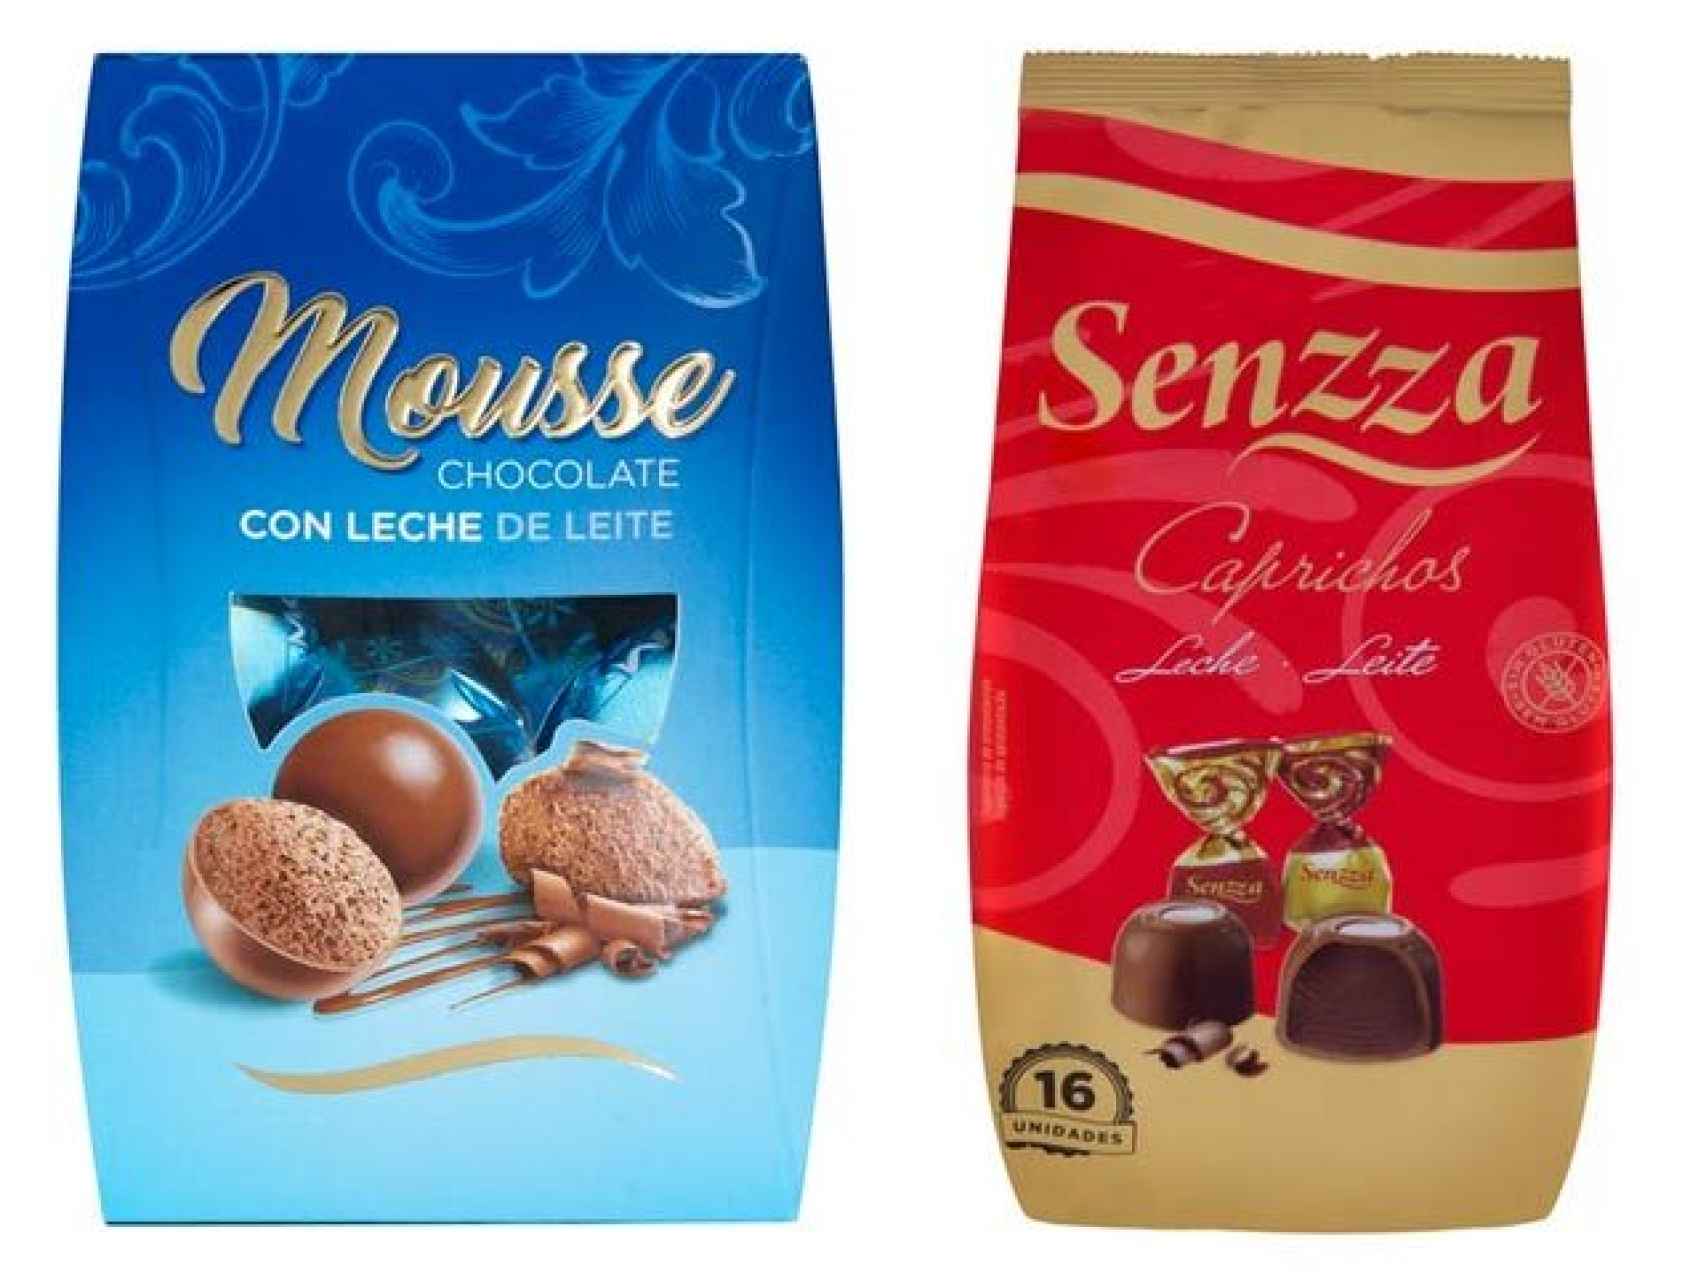 Los bombones Senzza se venden exclusivamente en Mercadona. Los fabrica Chocolates Valor.